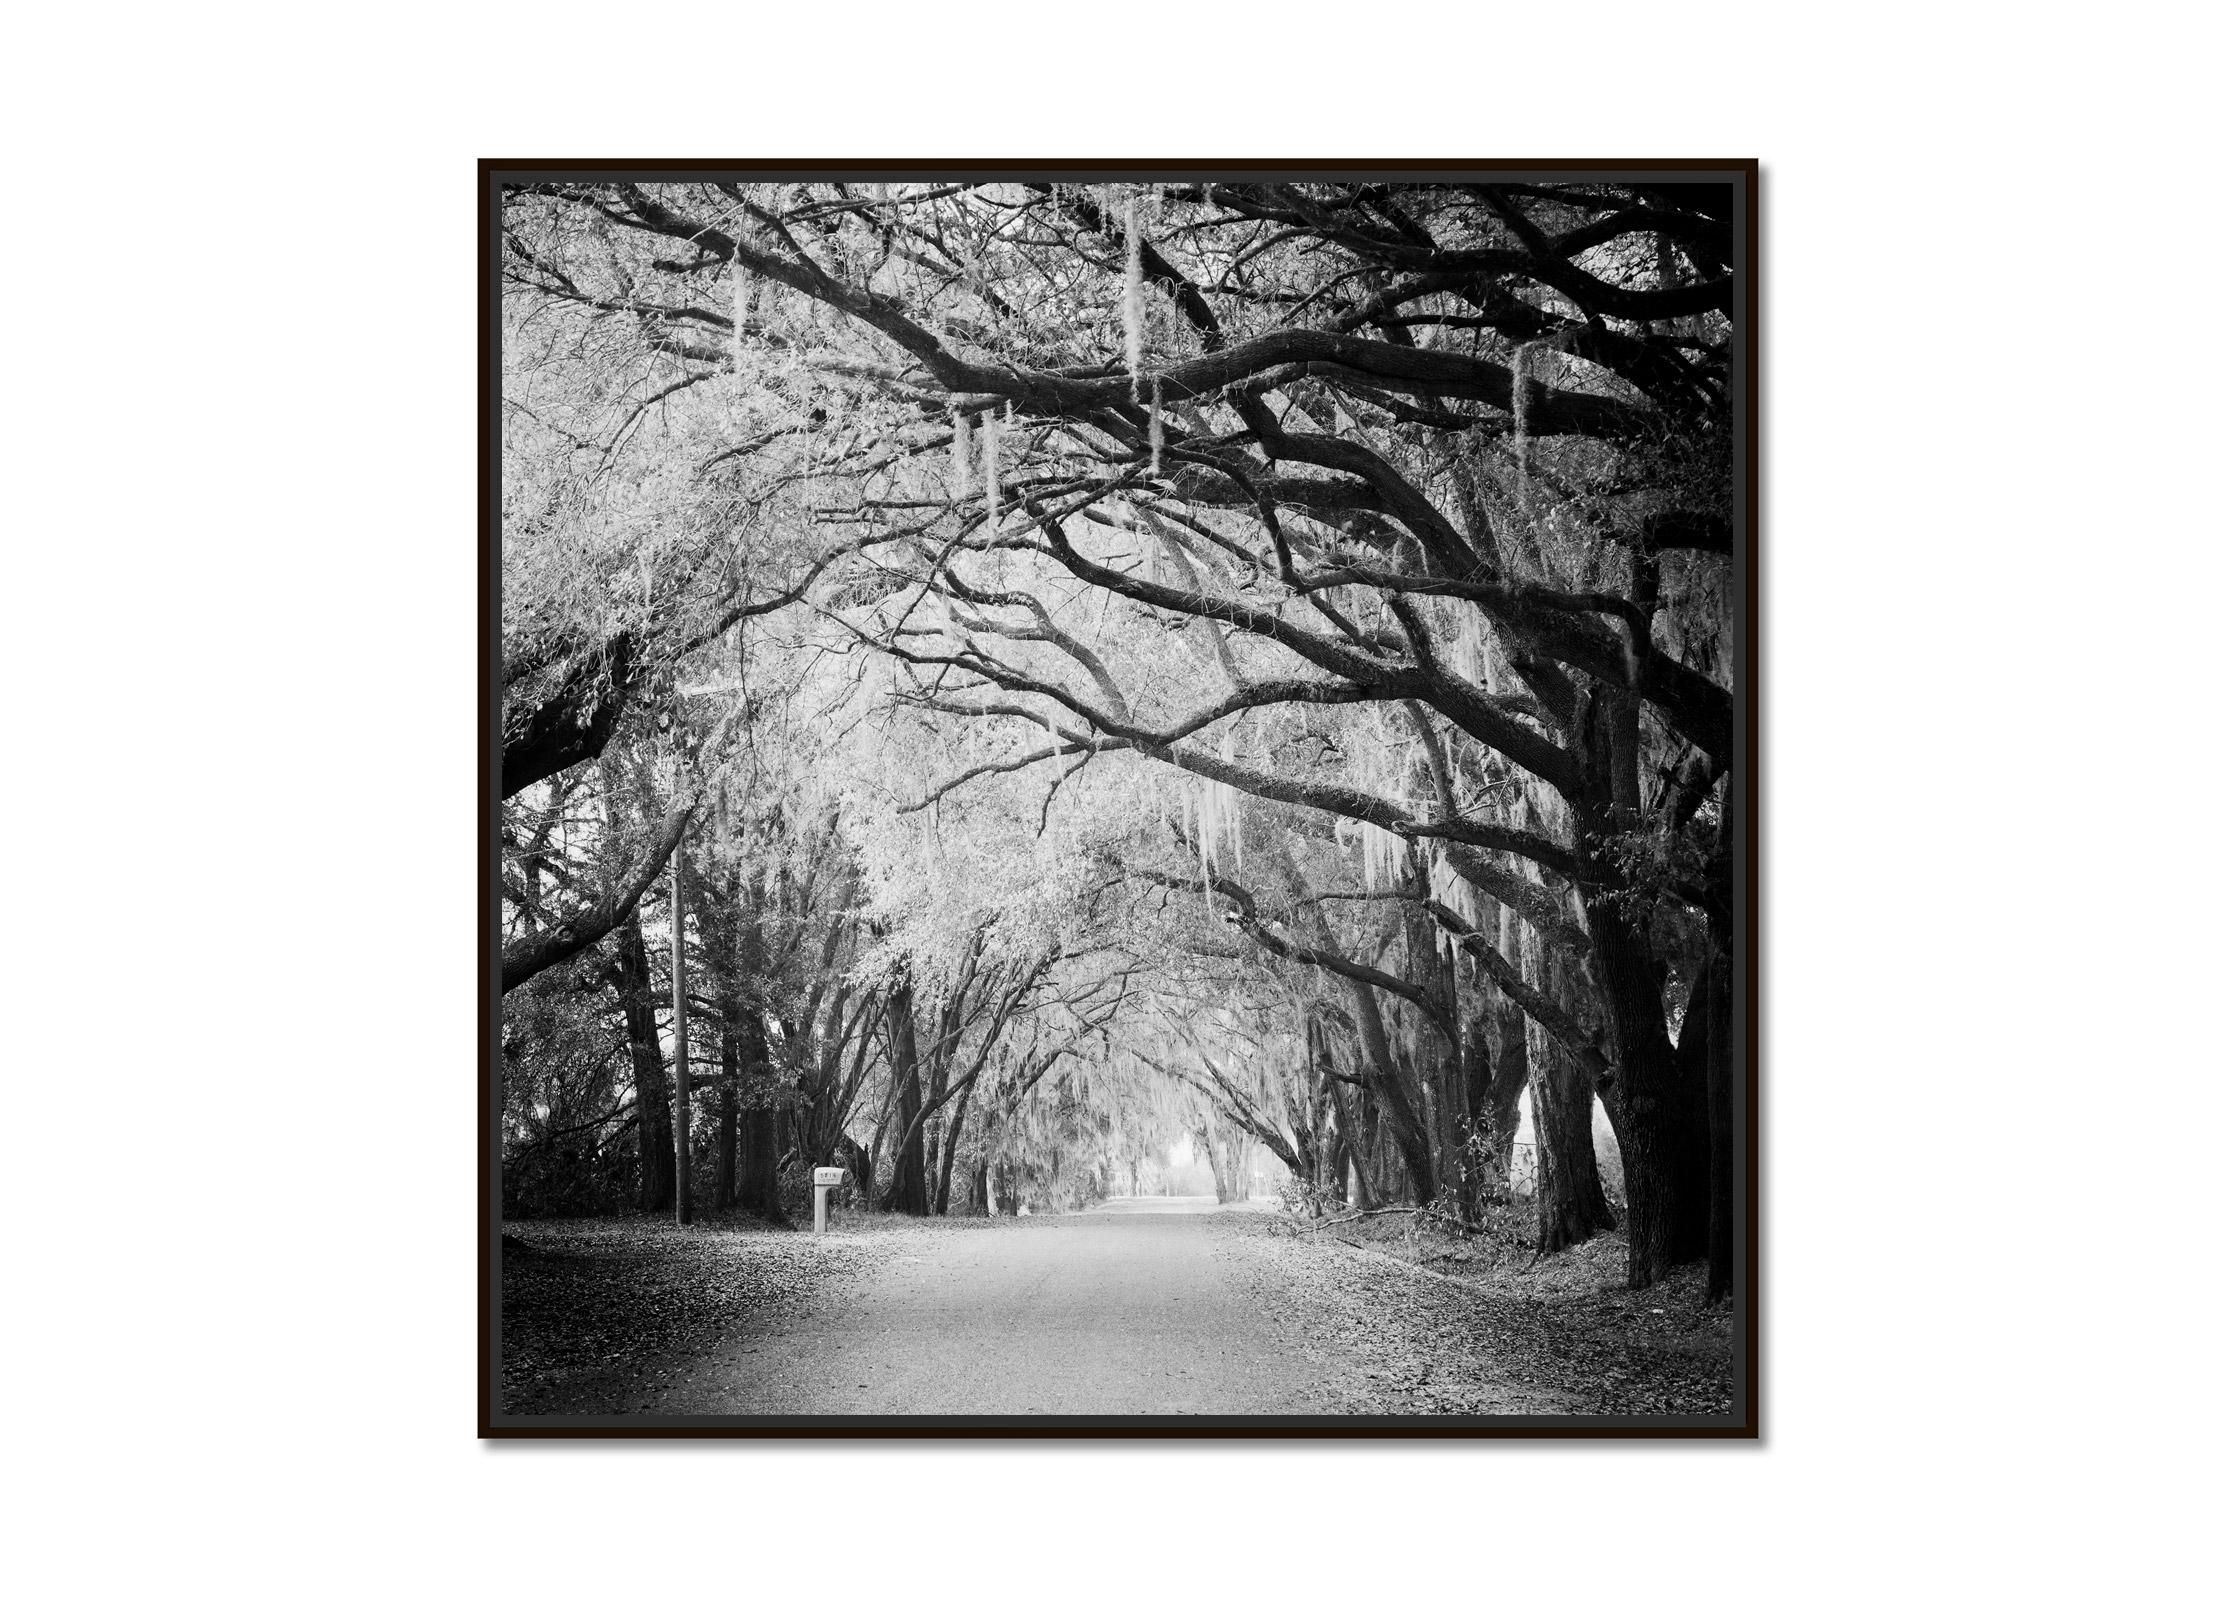 Fairytale Forest, Tree Avenue, Florida, Schwarz-Weiß-Fotografie, Landschaft – Photograph von Gerald Berghammer